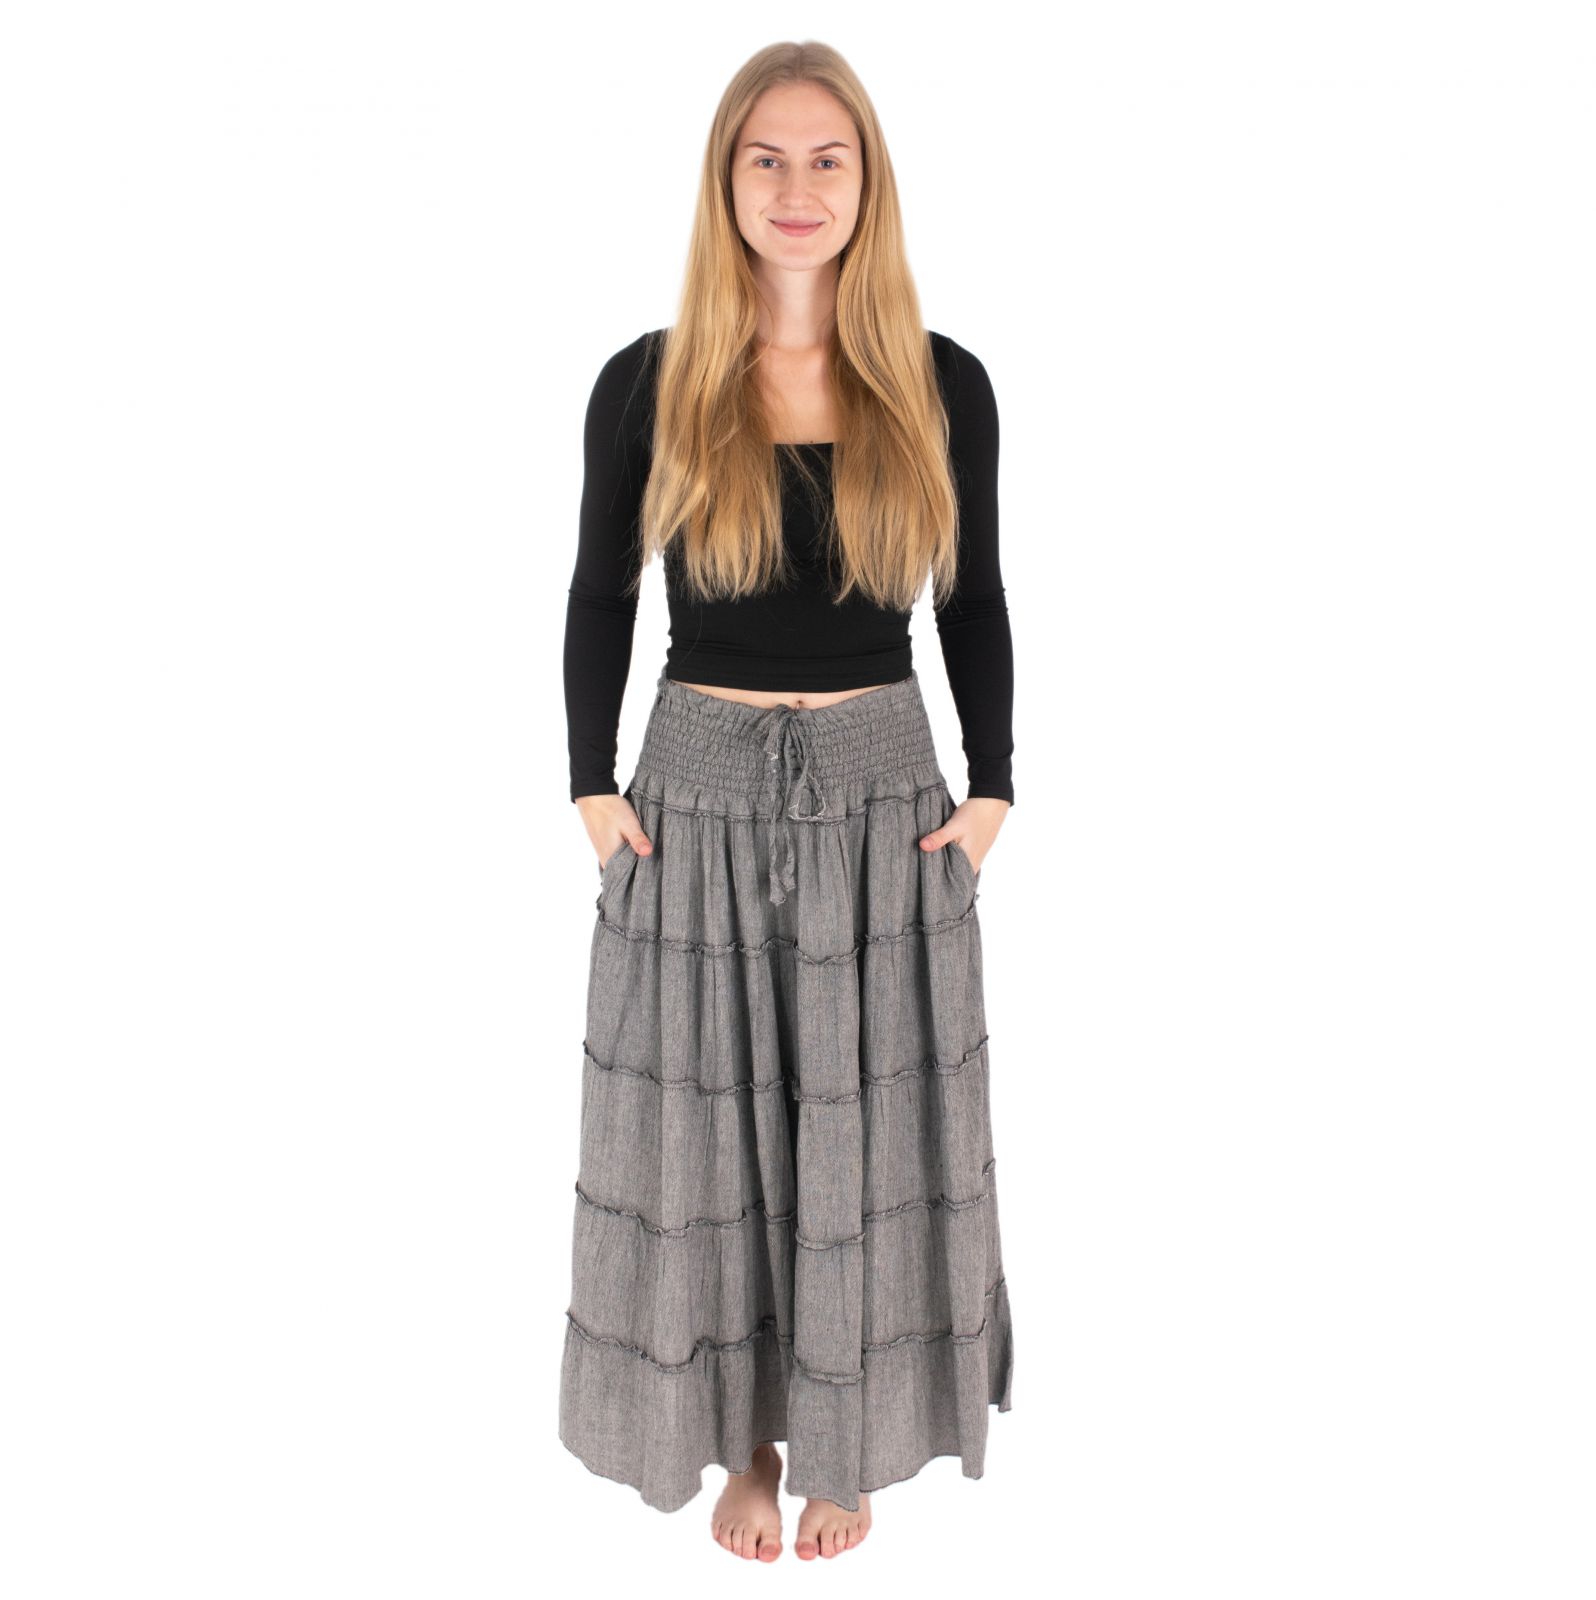 Dlhá sivá etno / hippie sukňa Bhintuna Grey Nepal